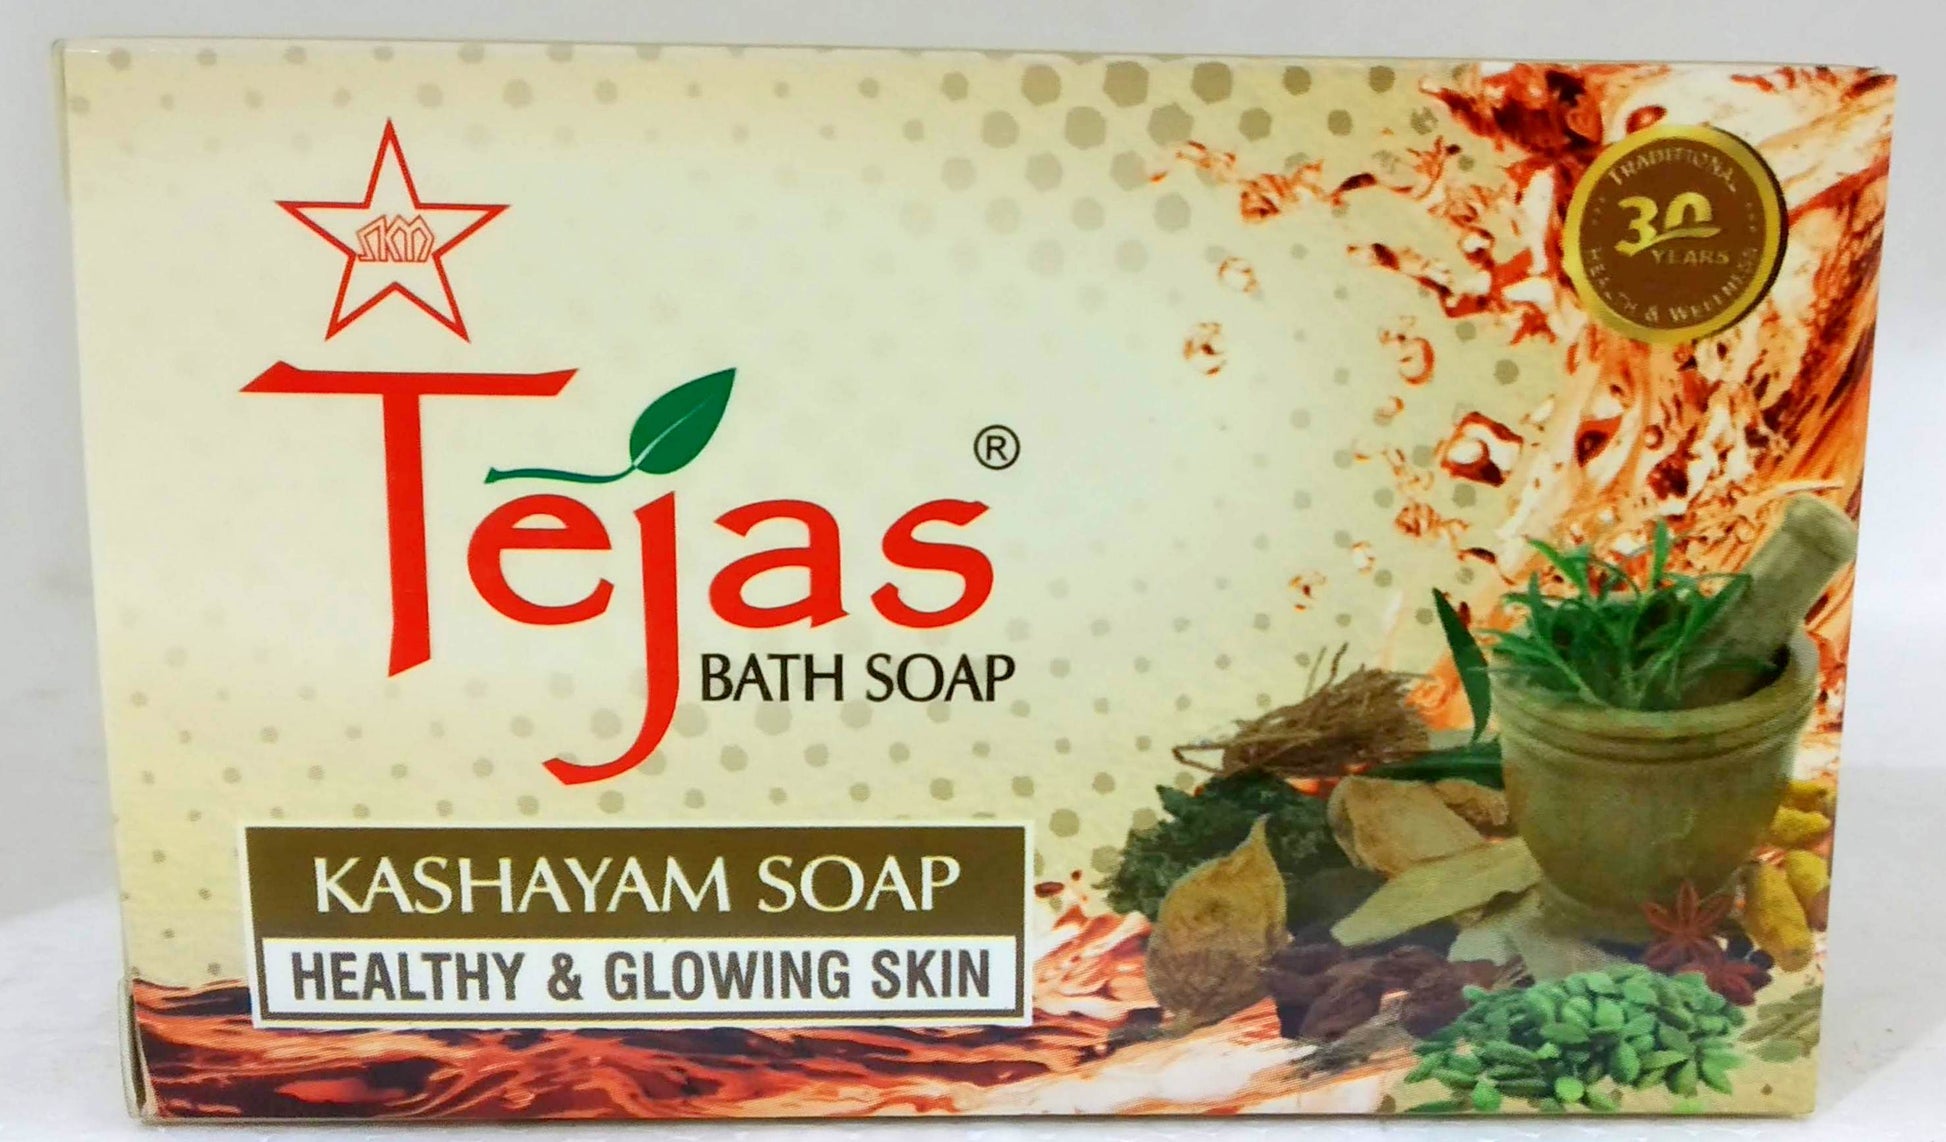 Tejas Kashayam Soap 75g -  SKM - Medizzo.com